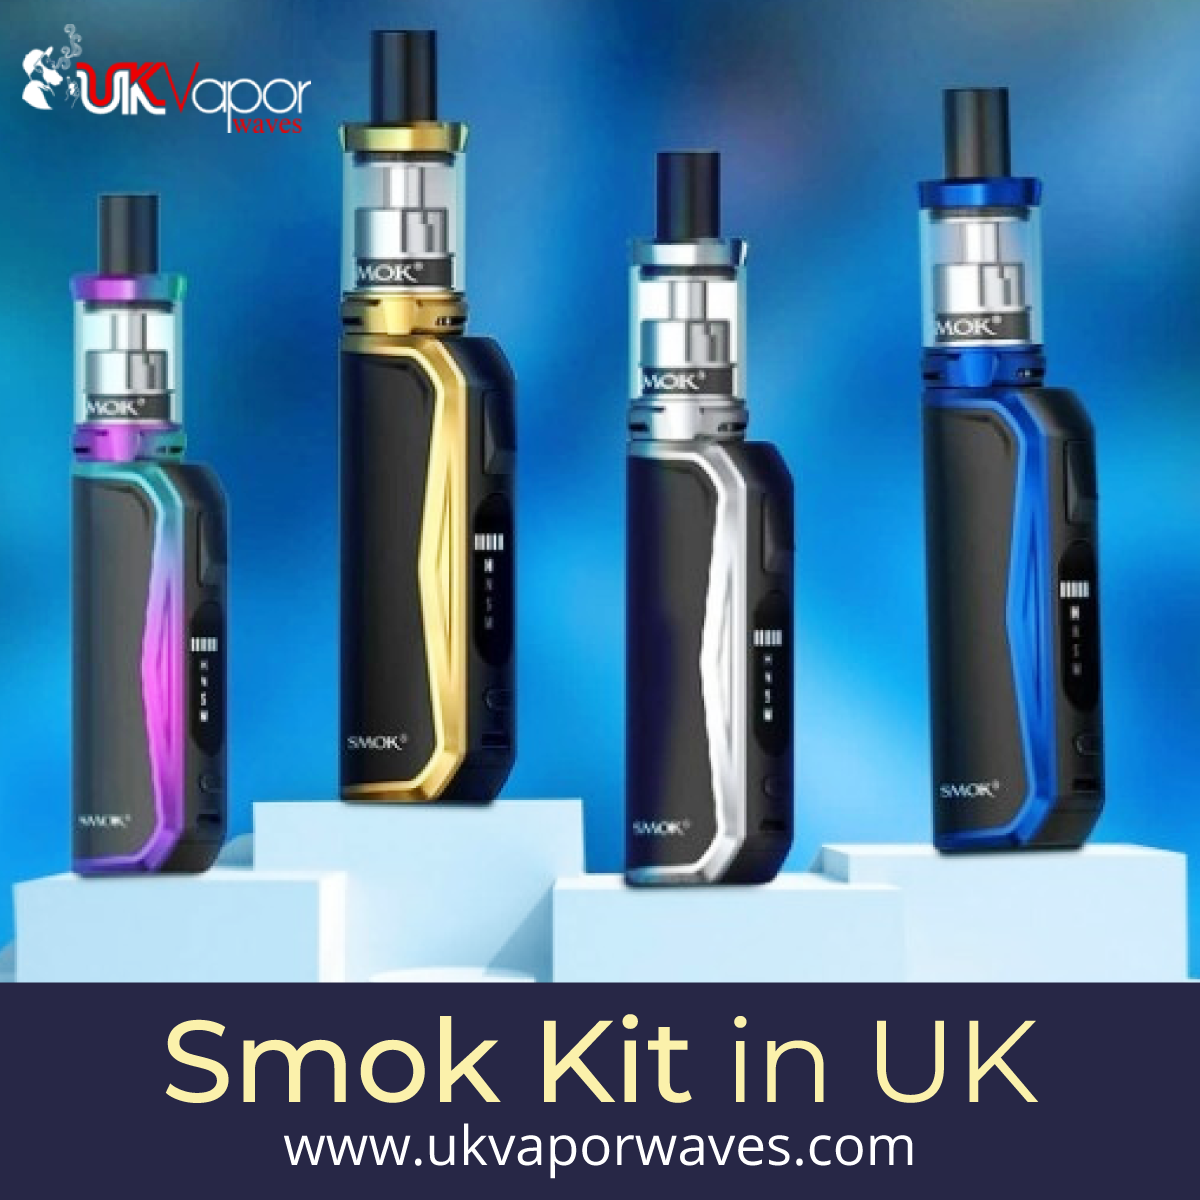 E-liquid and Smok kit in UK